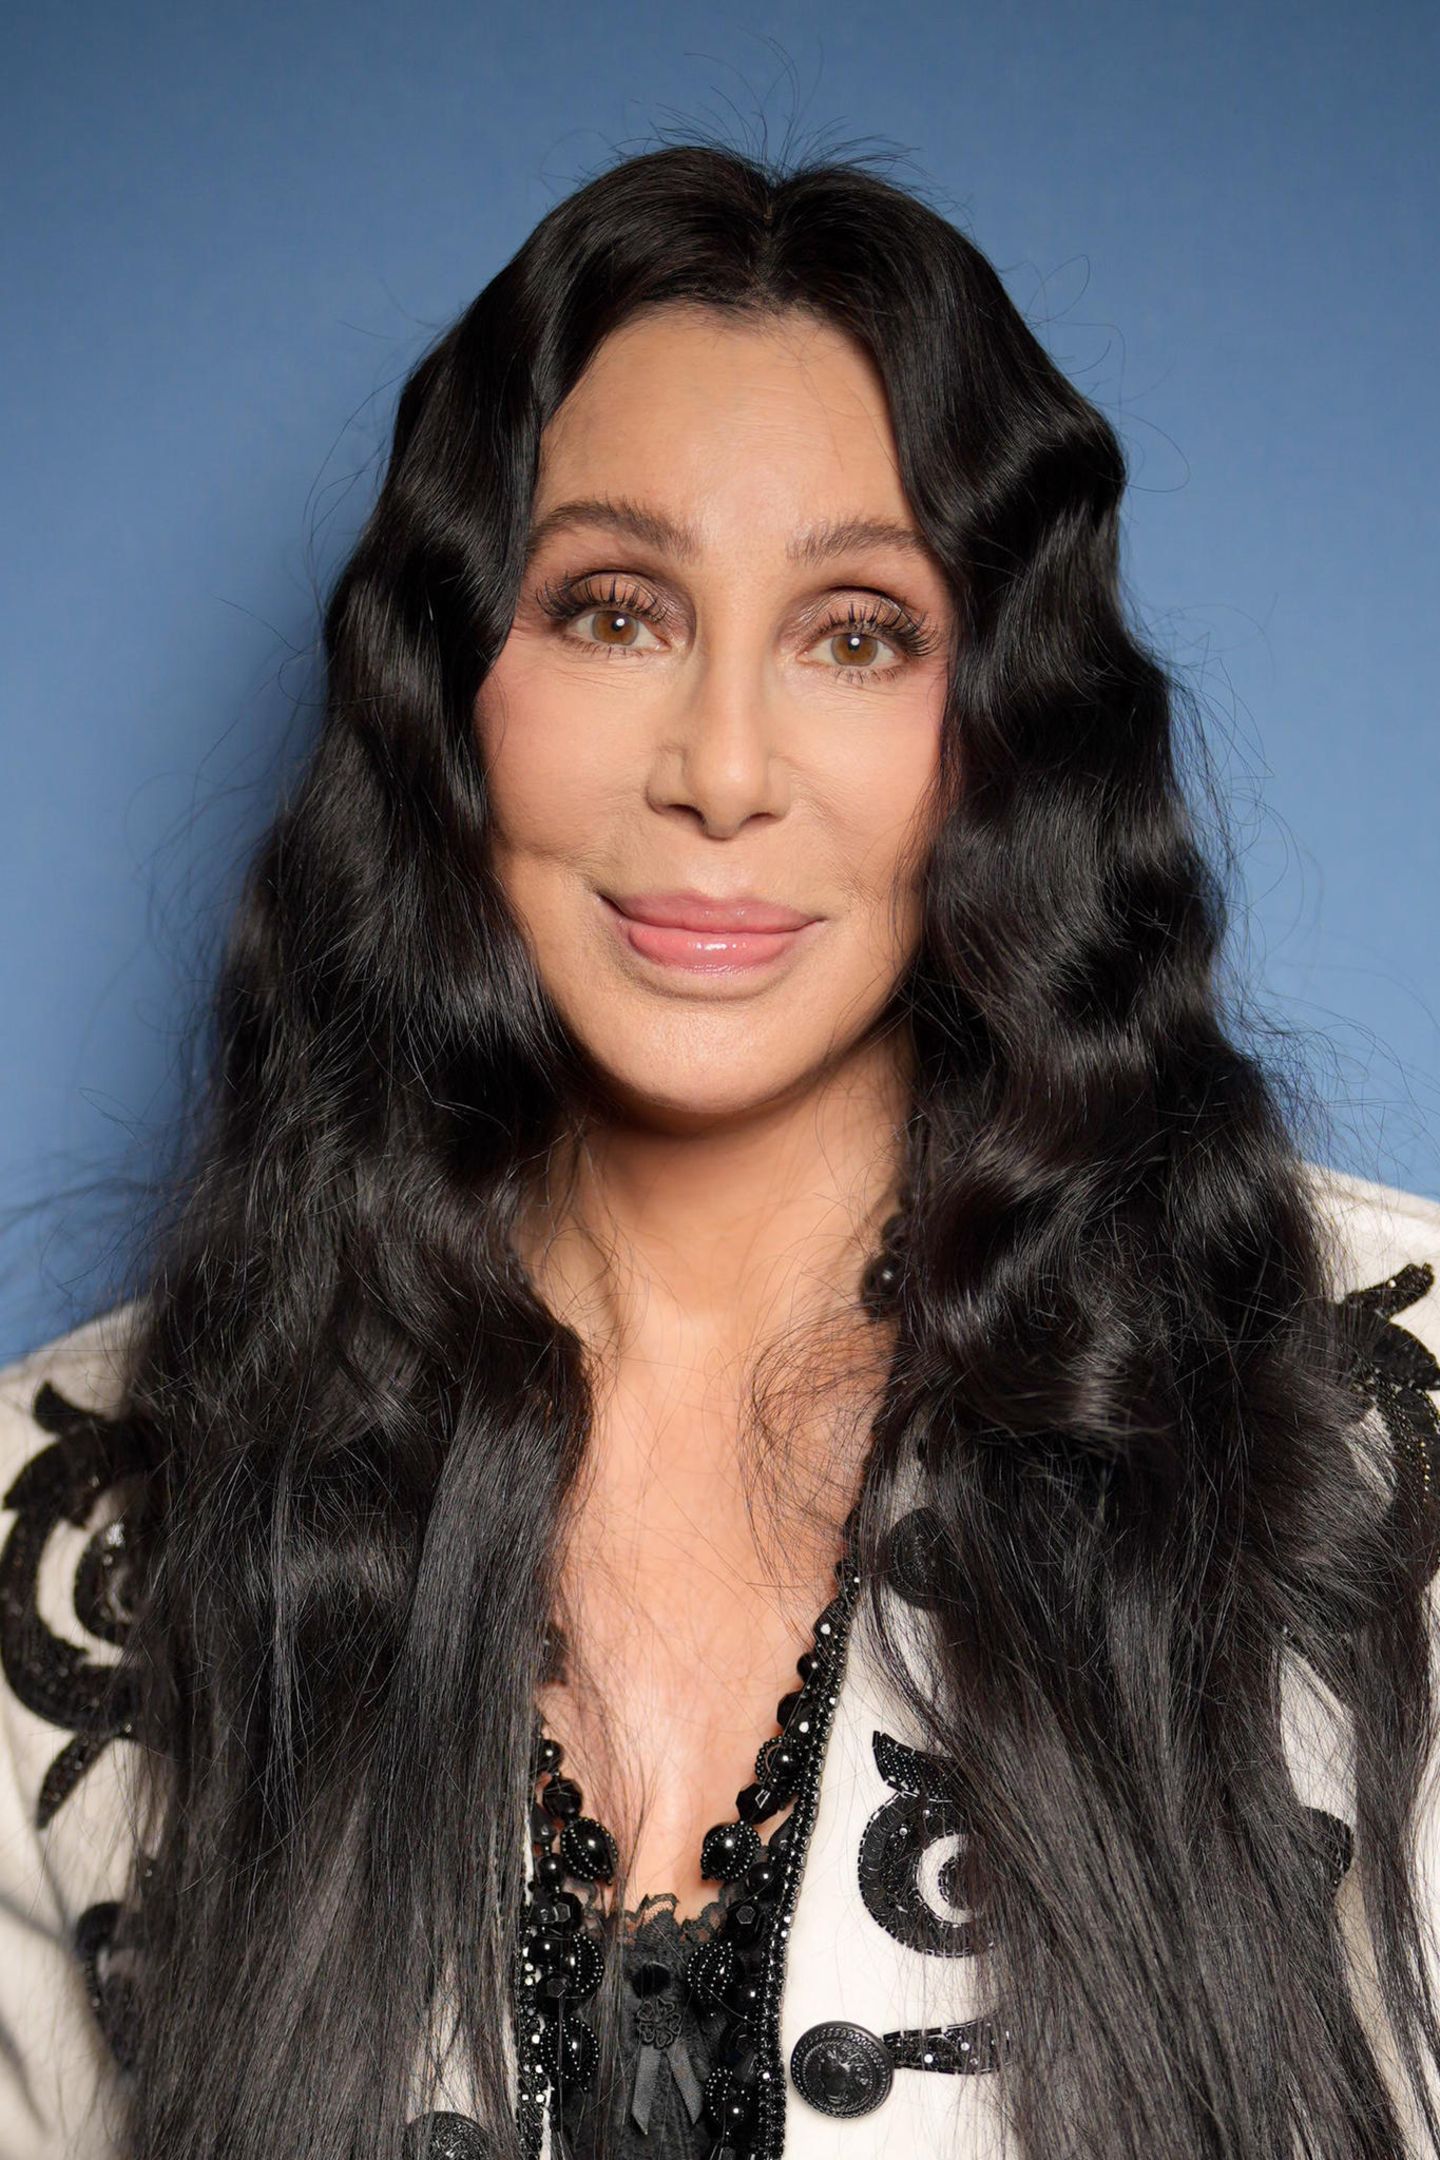 Können Sie glauben, dass Cher heute 75 Jahre alt wird? Zumindest ein paar Teile von ihr. Die sympathische Sängerin scherzt selbst regelmäßig über ihre zahlreichen Operationen und Botox-Eingriffe. Doch eins ist über die Jahre definitiv echt geblieben: ihr Talent, Menschen zu unterhalten. Ihre letzte Tour ist gerade mal eineinhalb Jahre her. Und auch ihre Liebe zu knappen Outfits hat sich nicht verändert.